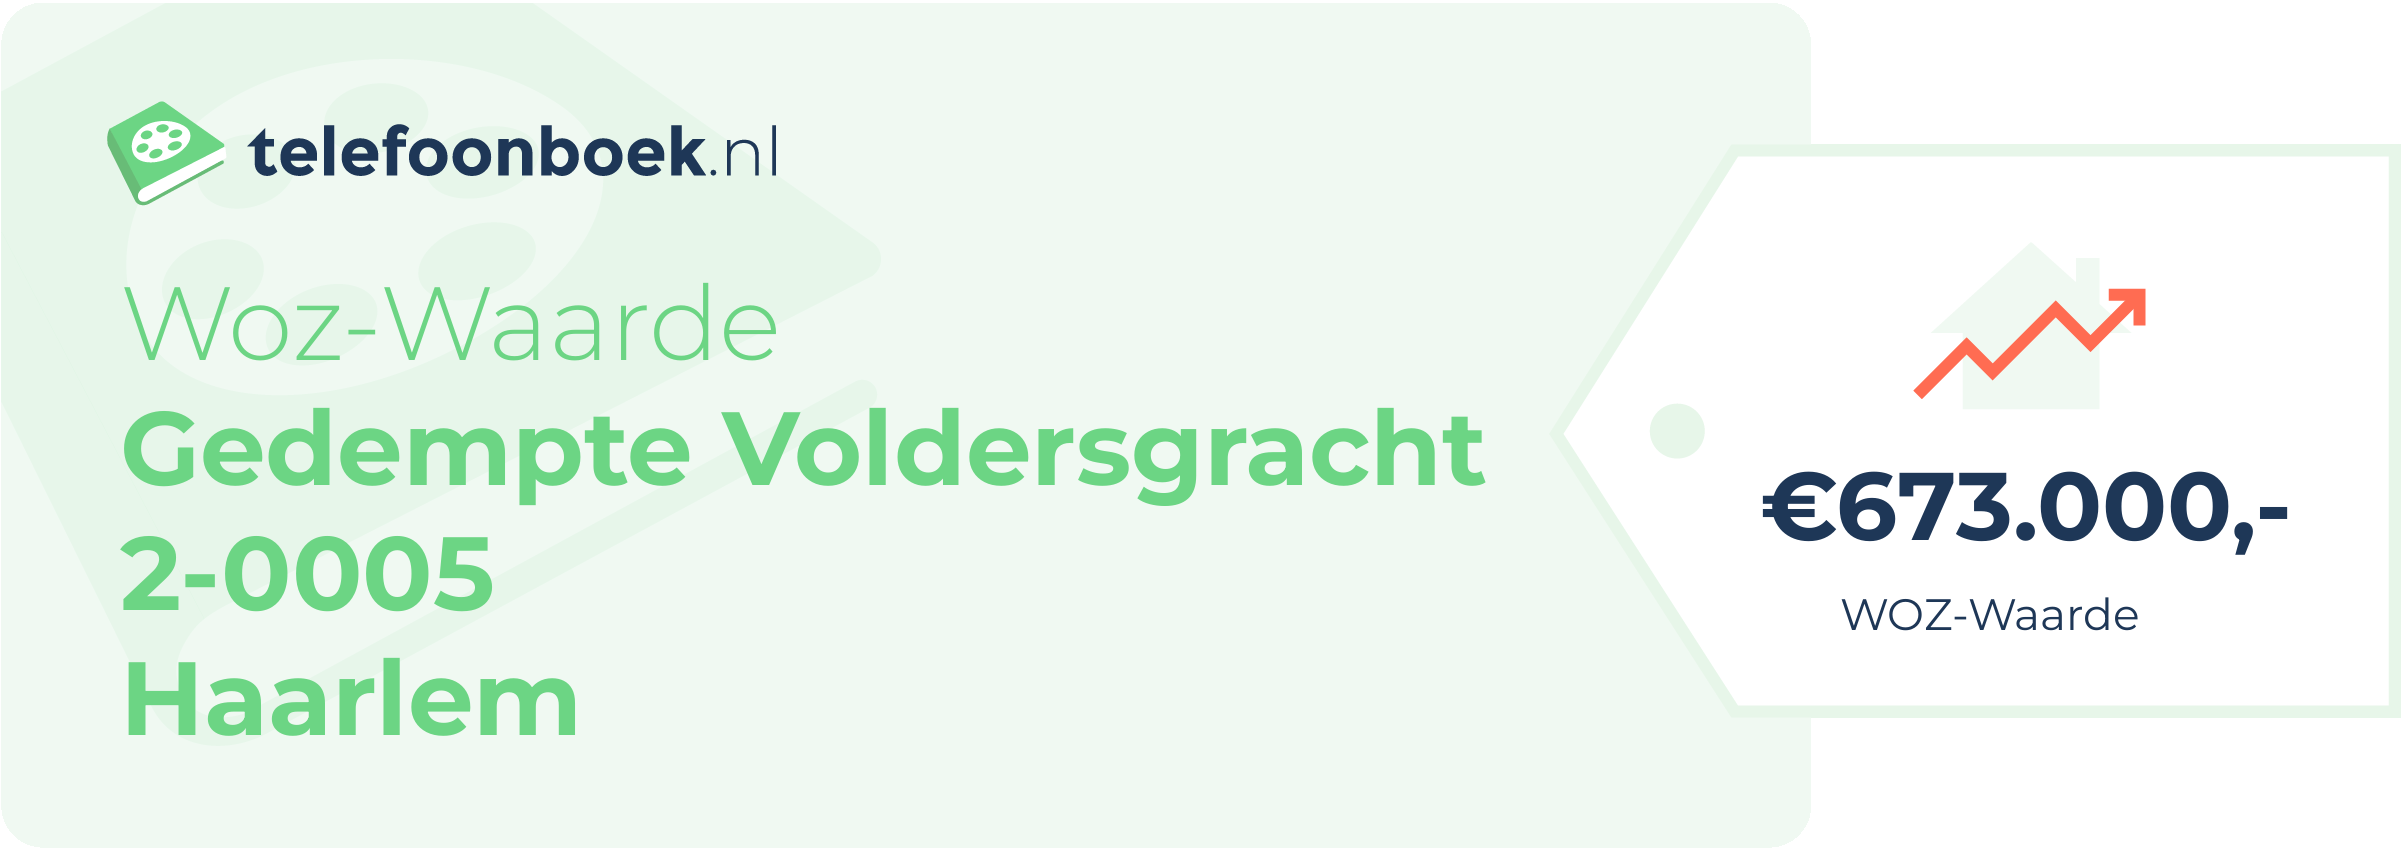 WOZ-waarde Gedempte Voldersgracht 2-0005 Haarlem